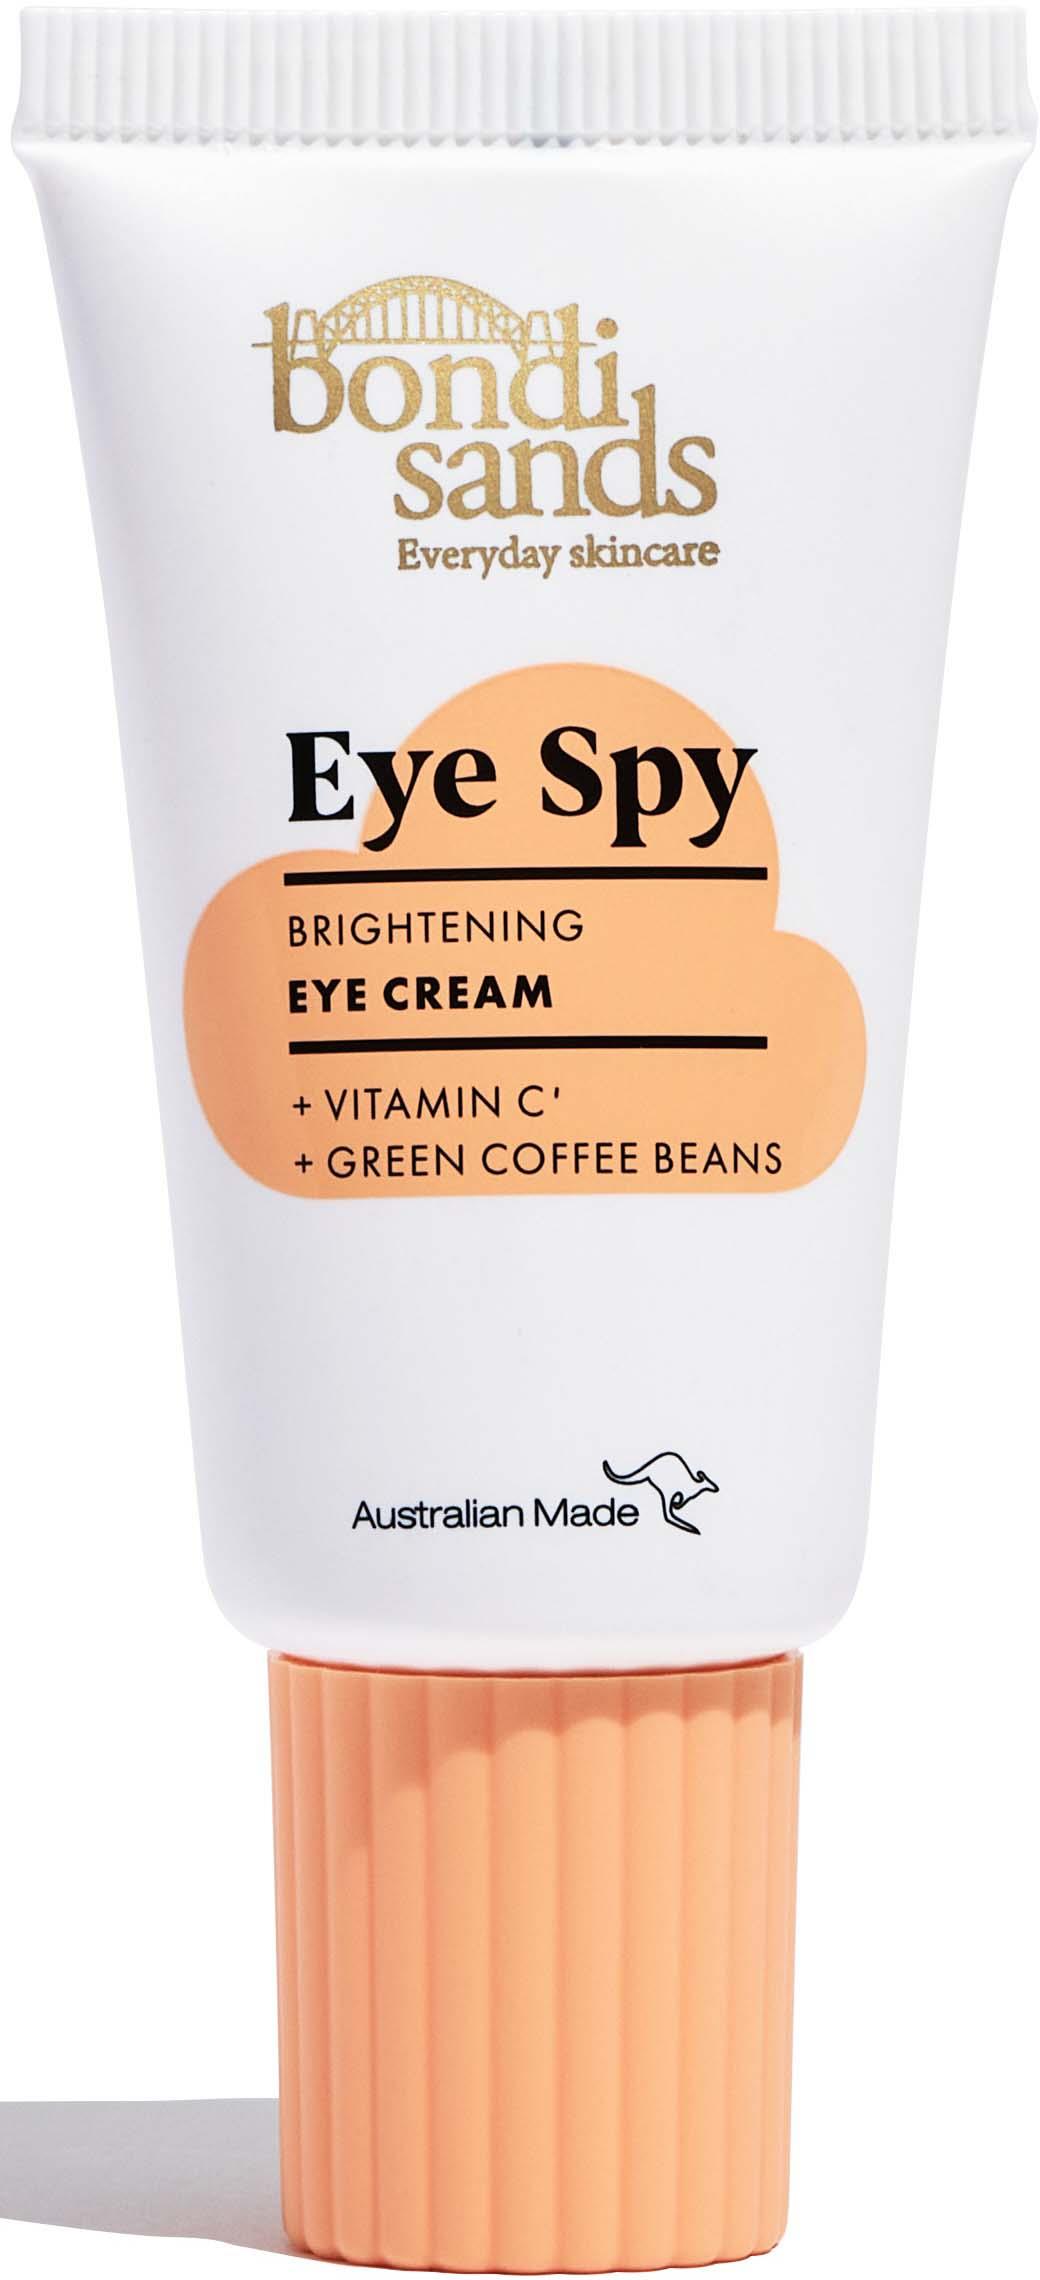 Bondi Sands Eye Spy Vitamin C Eye Cream 15 ml | lyko.com